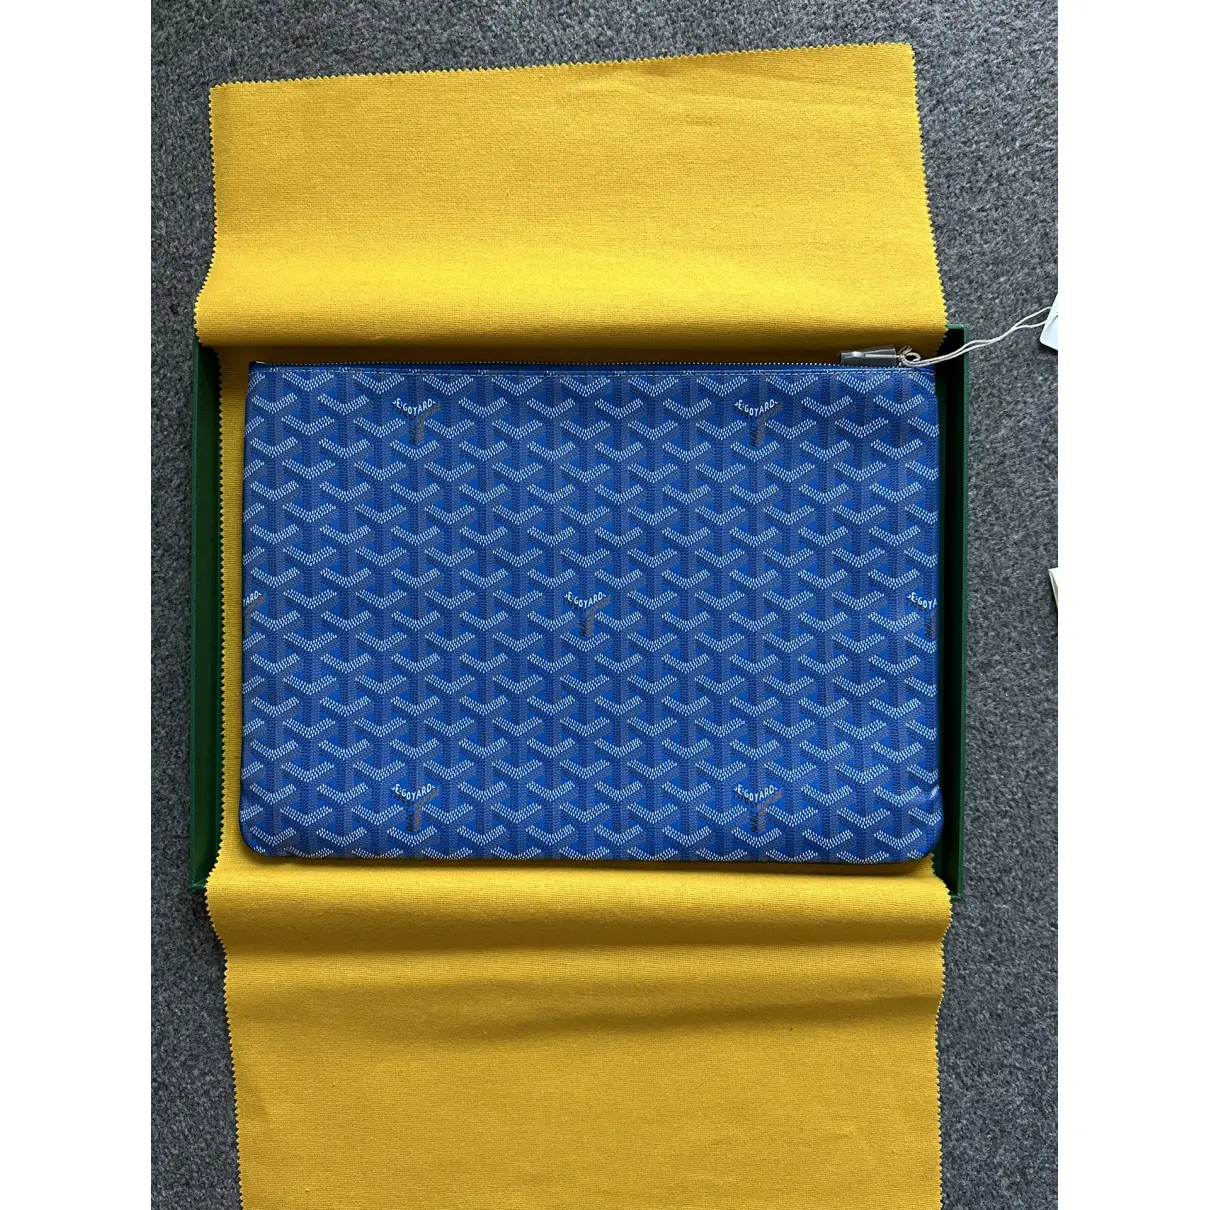 Buy Goyard Sénat cloth clutch bag online